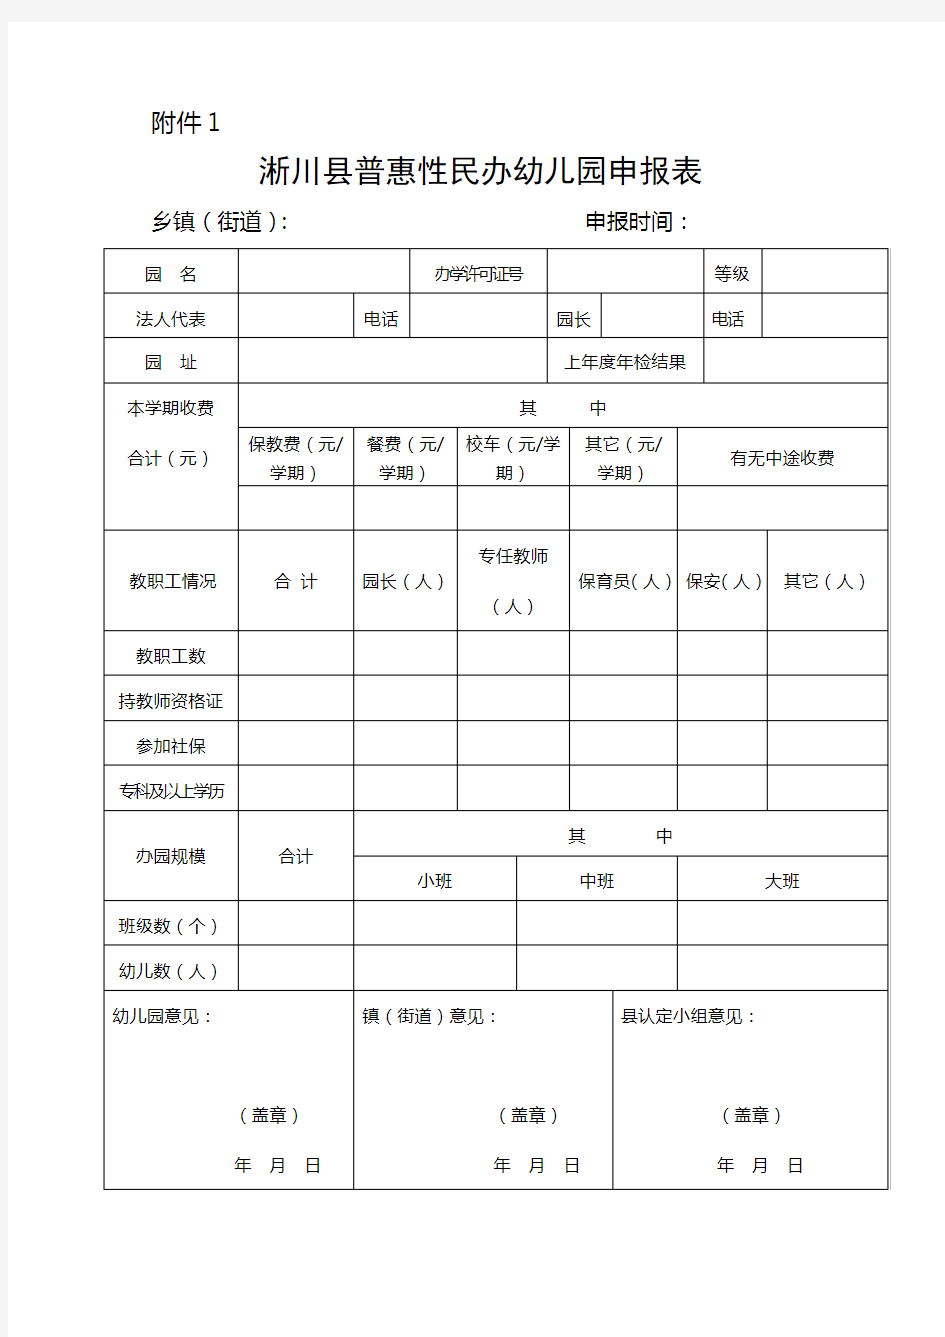 普惠性民办幼儿园申报材料附件1(1)